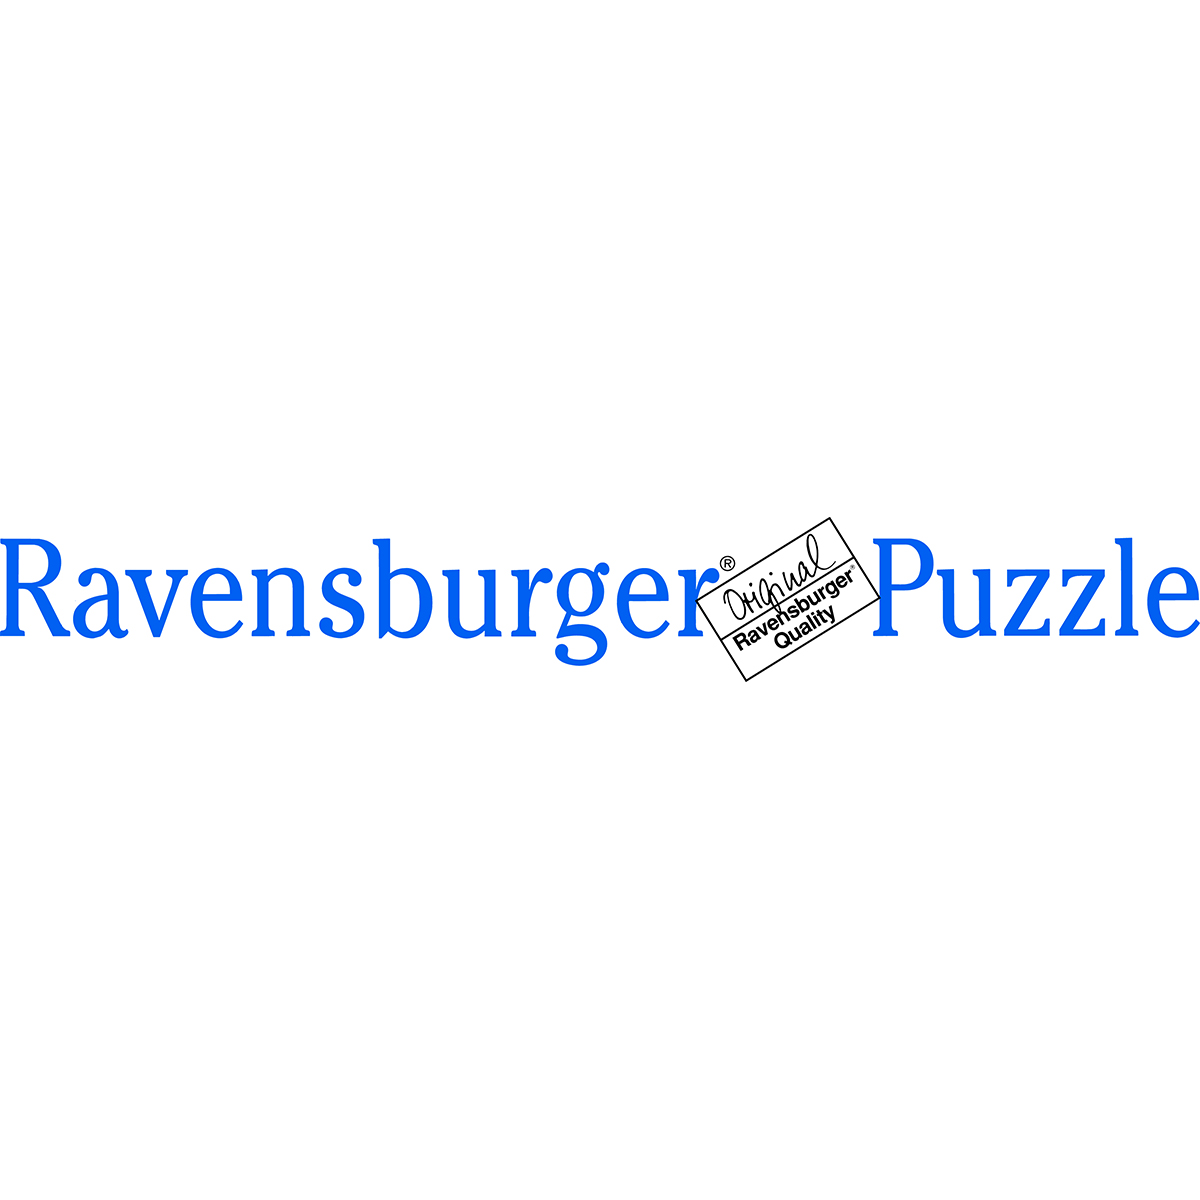 Ravensburger - puzzle 24 pezzi - formato sagomato – per bambini a partire dai 3 anni - peppa pig – 05545 - PEPPA PIG, RAVENSBURGER